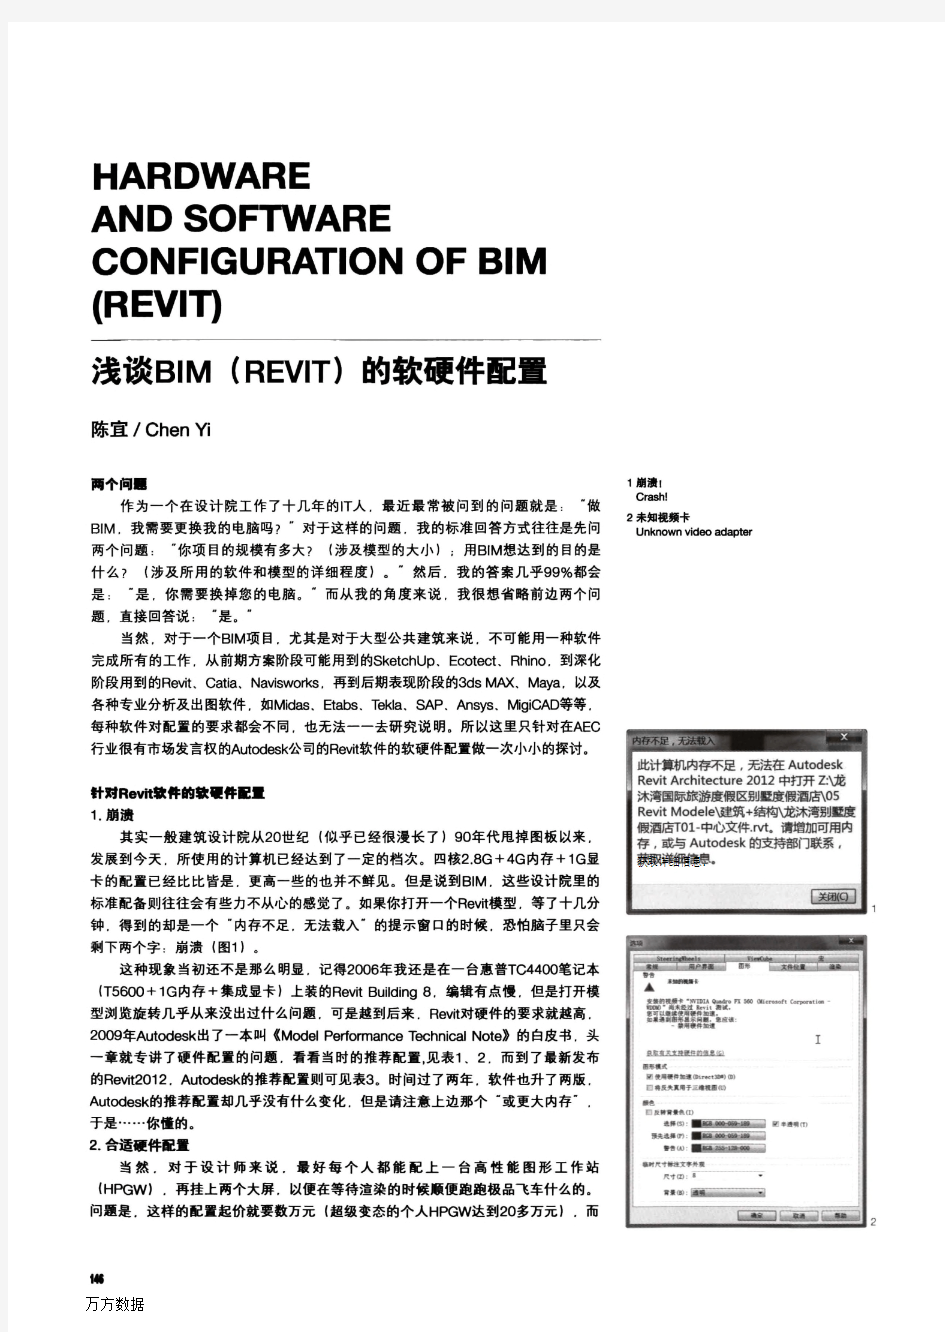 浅谈BIM(REVIT)的软硬件配置